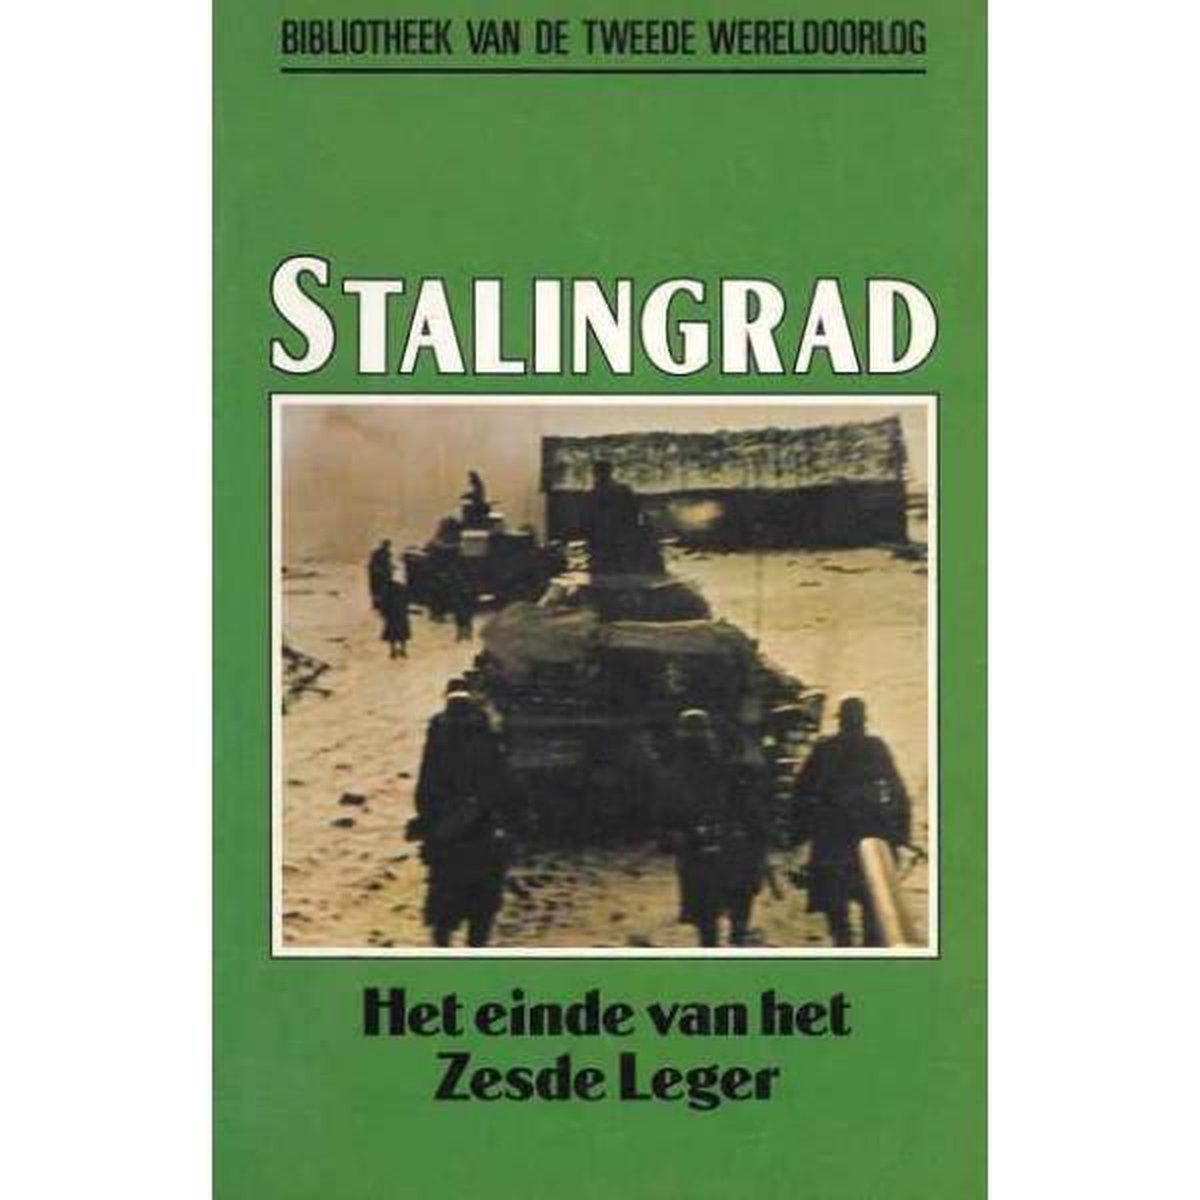 Stalingrad, Het einde van het Zesde leger. nummer 10 uit de serie.